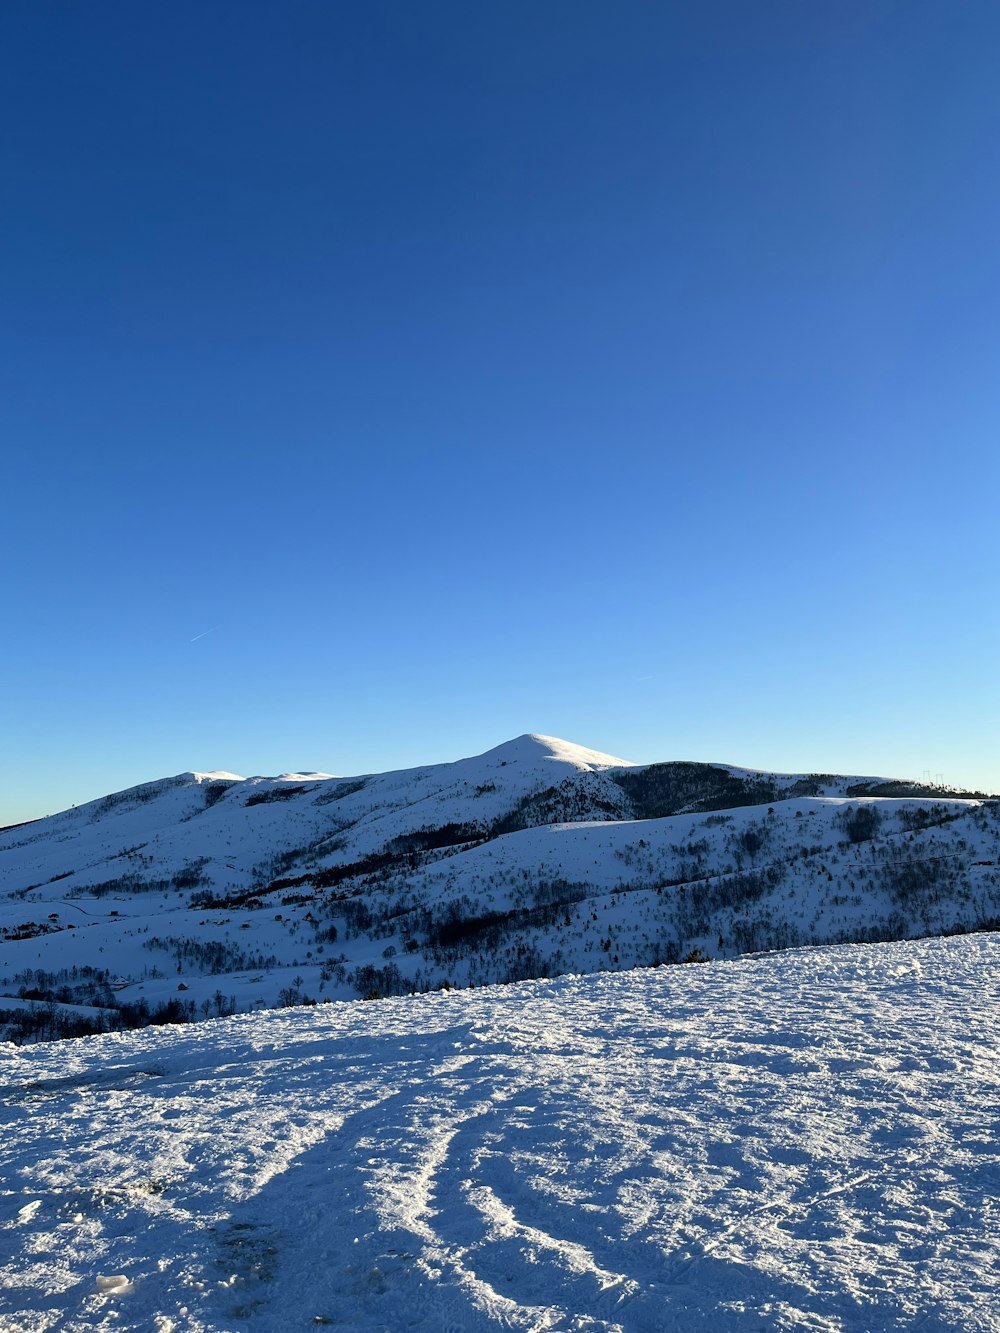 uma vista de uma montanha nevada com trilhas na neve